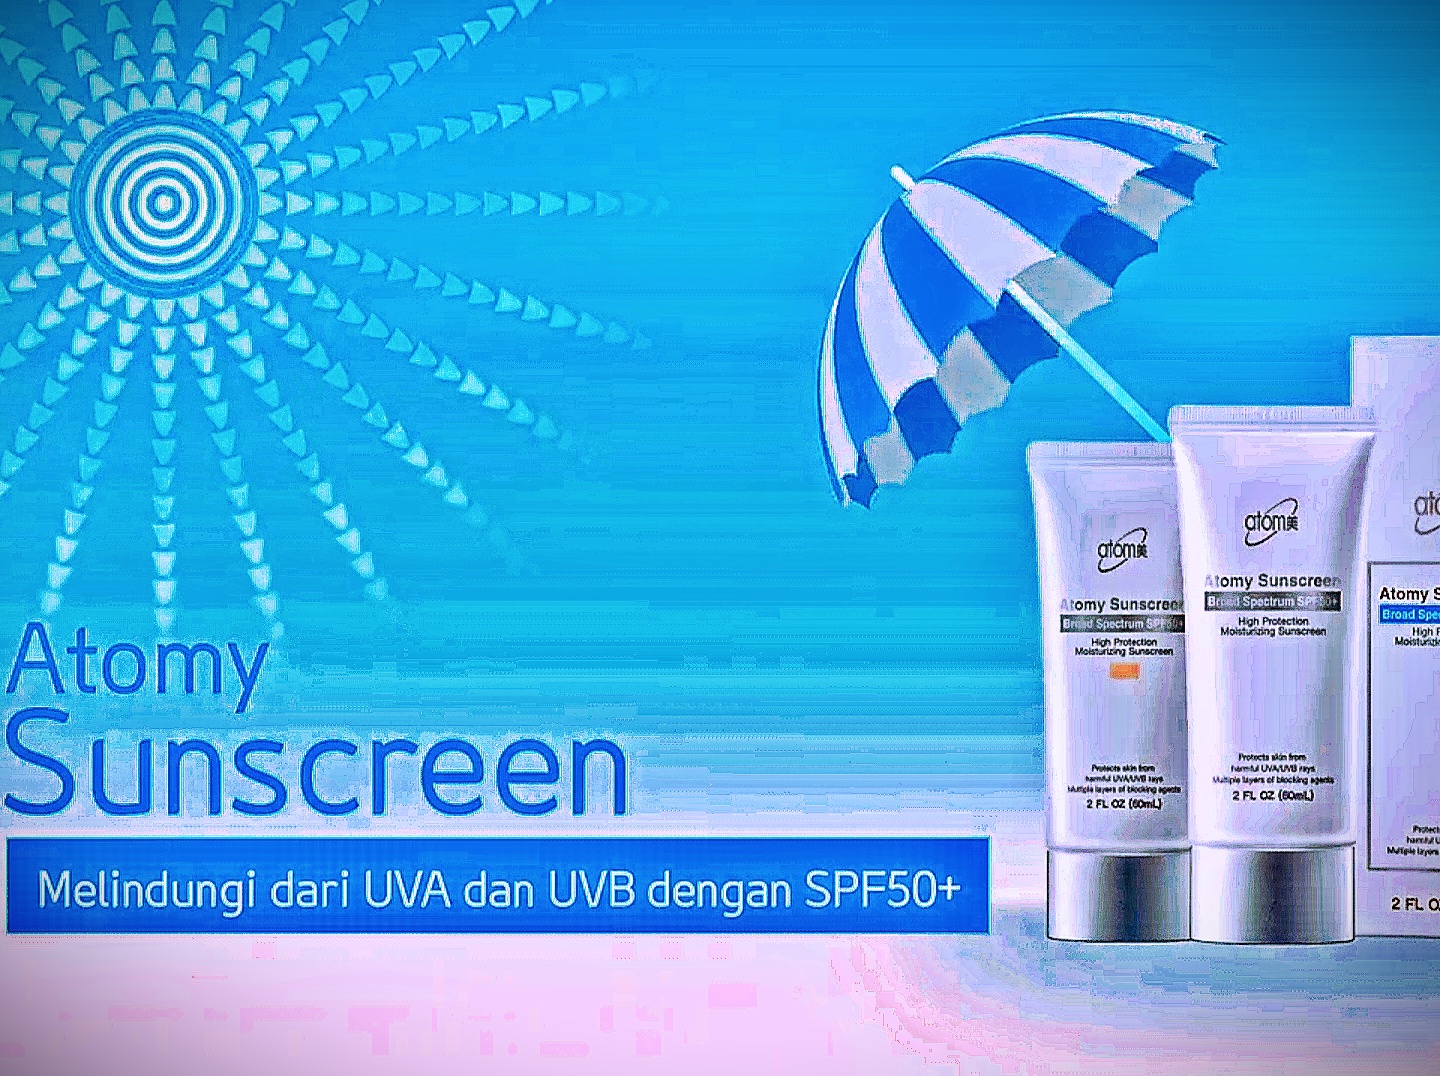 Атоми солнцезащитный стик. Атоми санскрин. Atomy Sunscreen. Atomy Sunscreen SPF. Атоми солнцезащитный крем spf50.